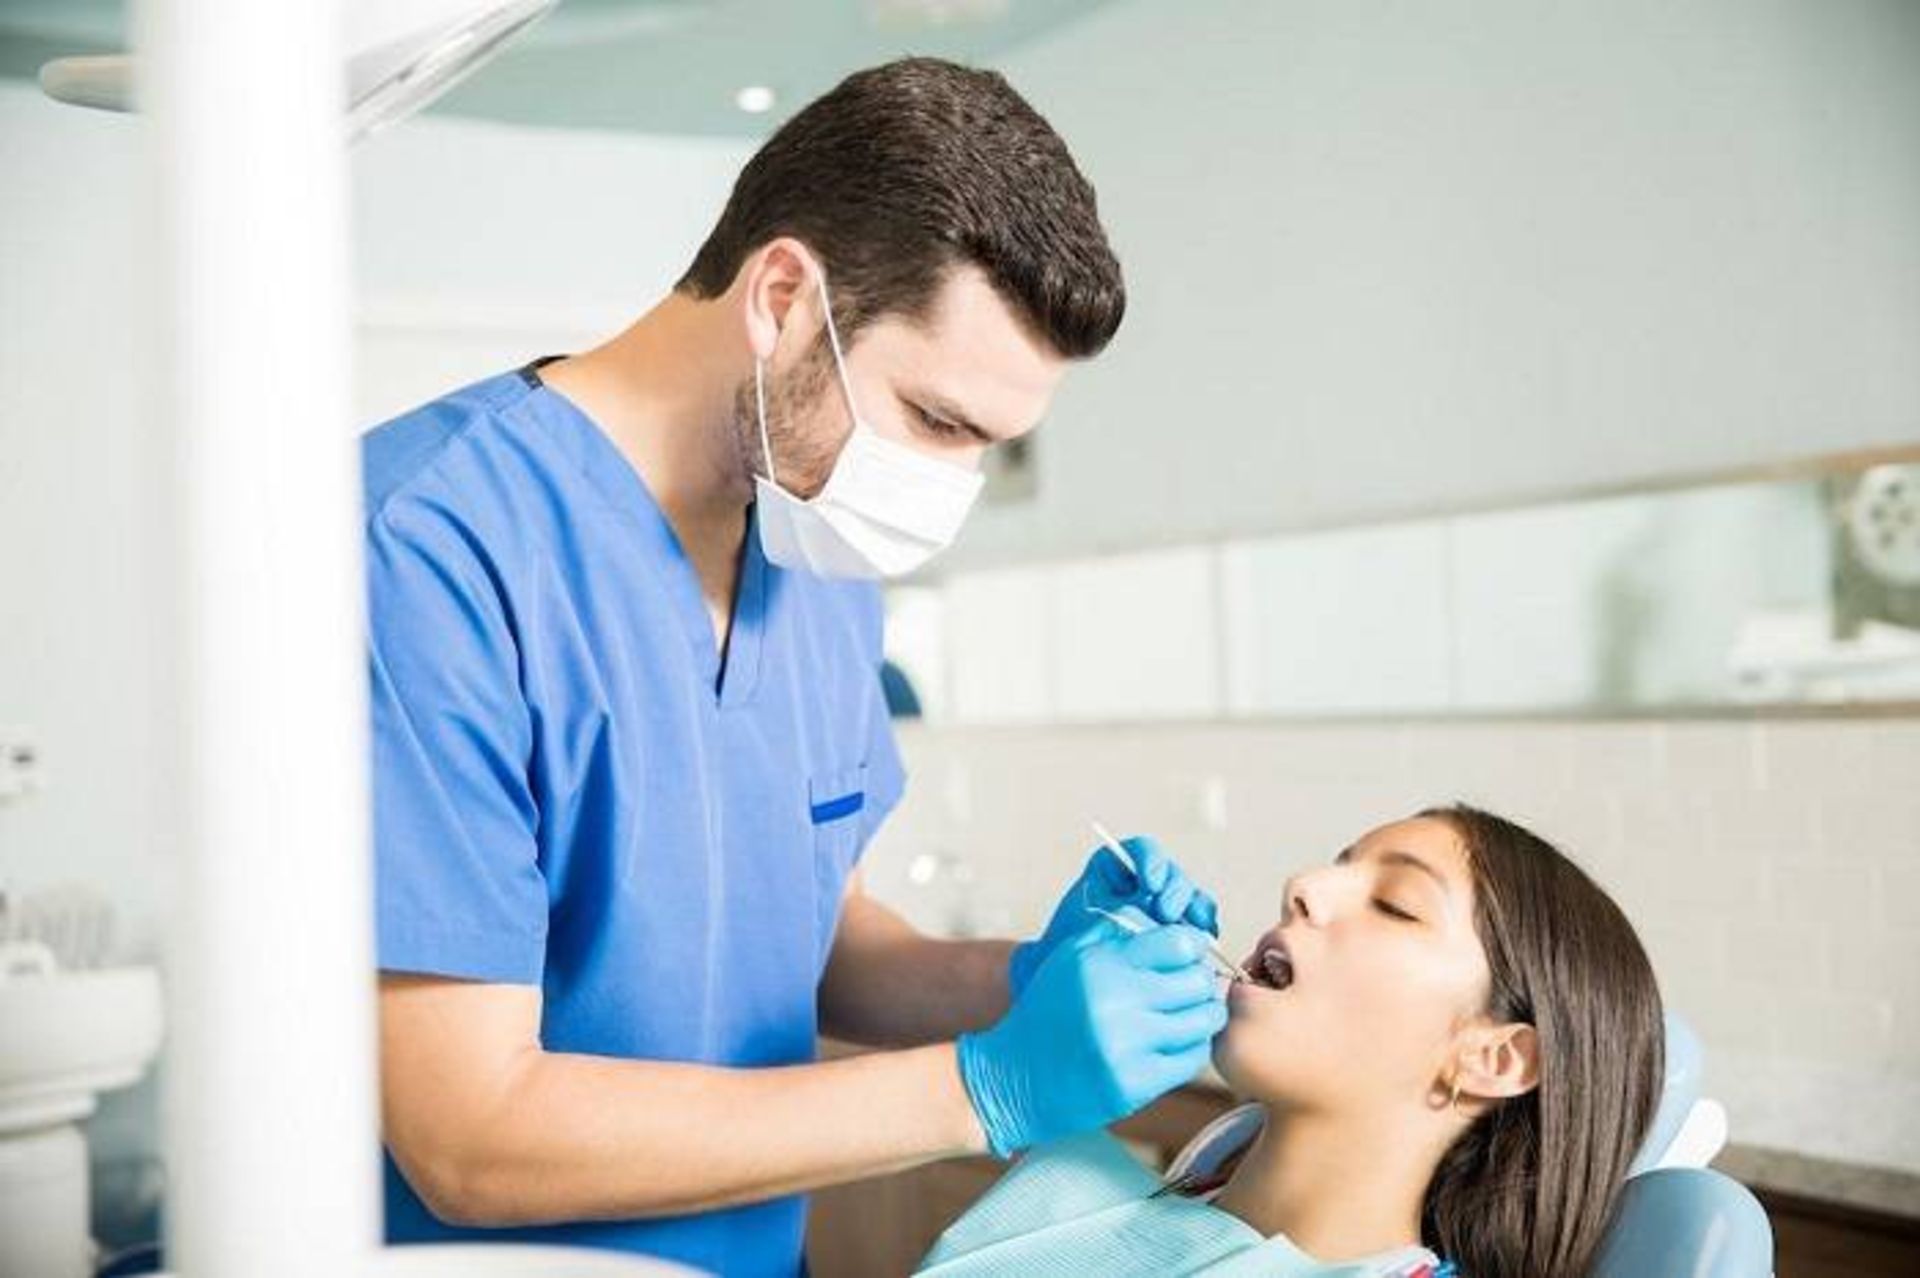 دندانپزشک / dentist